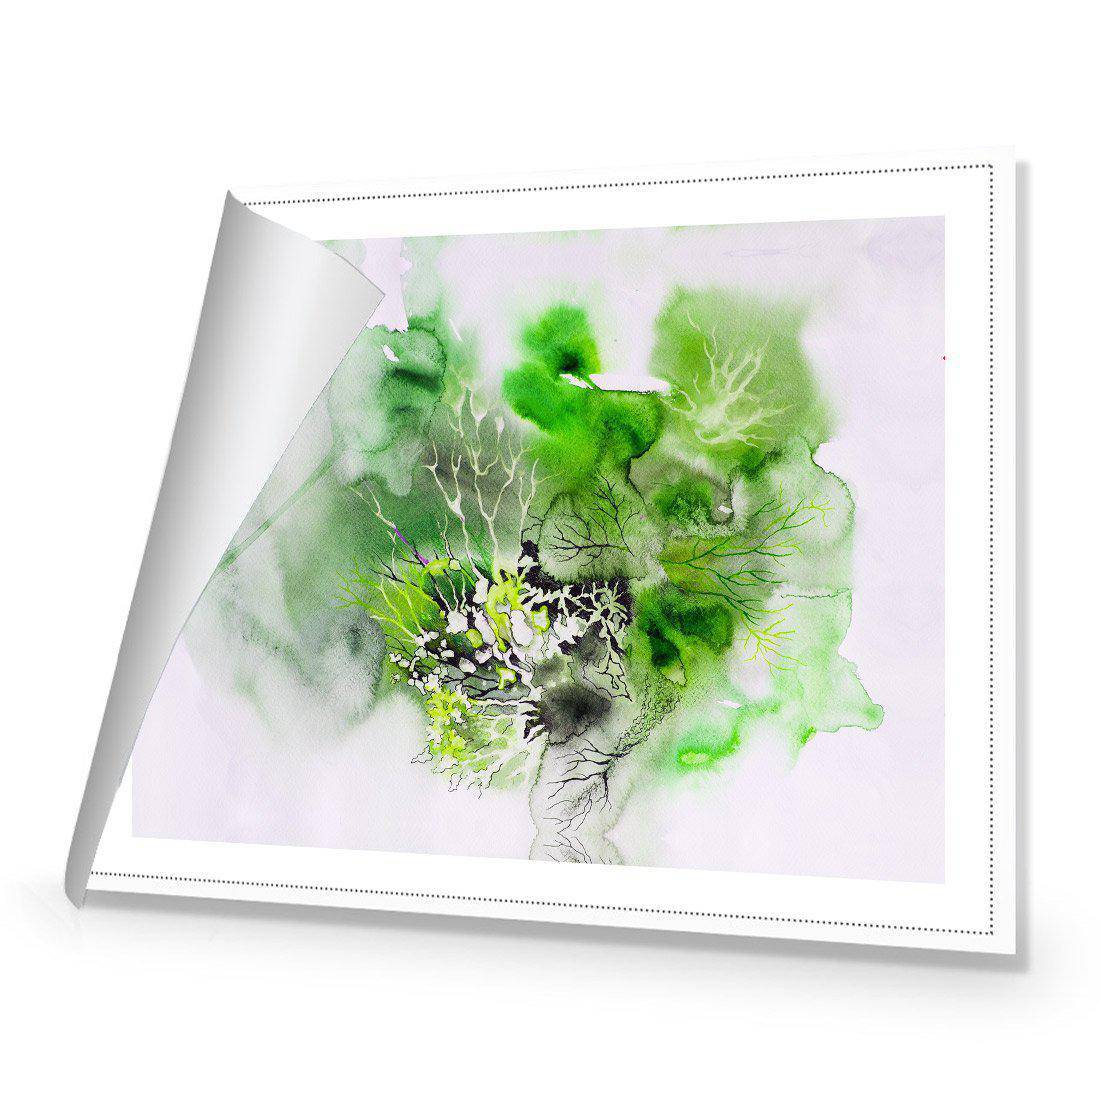 Veins Of Life Green Canvas Art-Canvas-Wall Art Designs-45x30cm-Rolled Canvas-Wall Art Designs